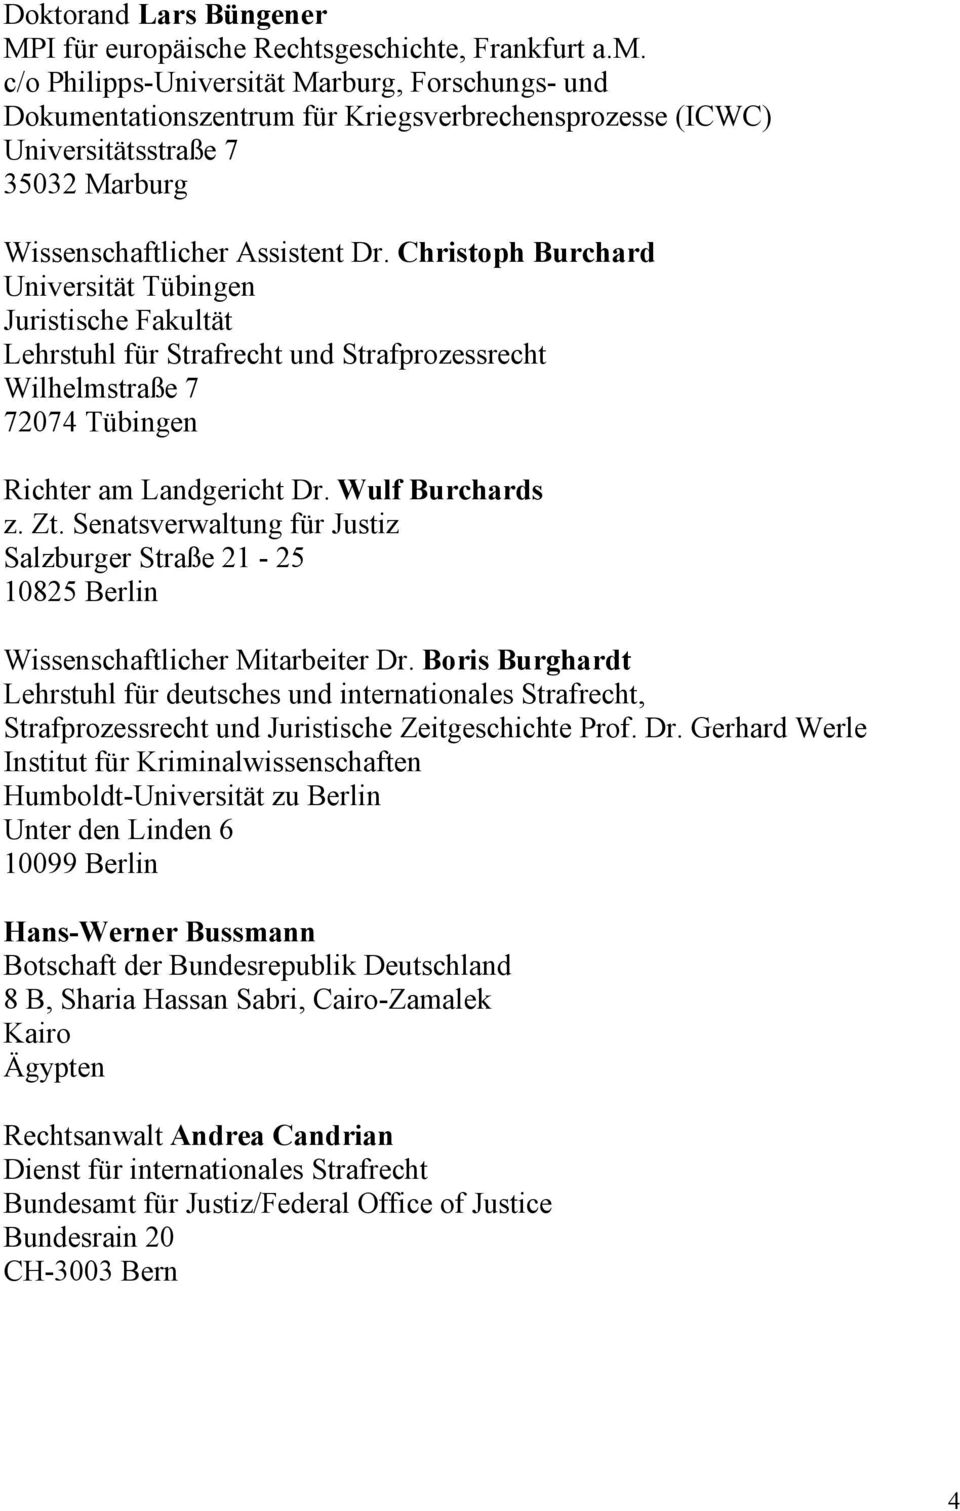 Christoph Burchard Universität Tübingen Juristische Fakultät Lehrstuhl für Strafrecht und Strafprozessrecht Wilhelmstraße 7 72074 Tübingen Richter am Landgericht Dr. Wulf Burchards z. Zt.